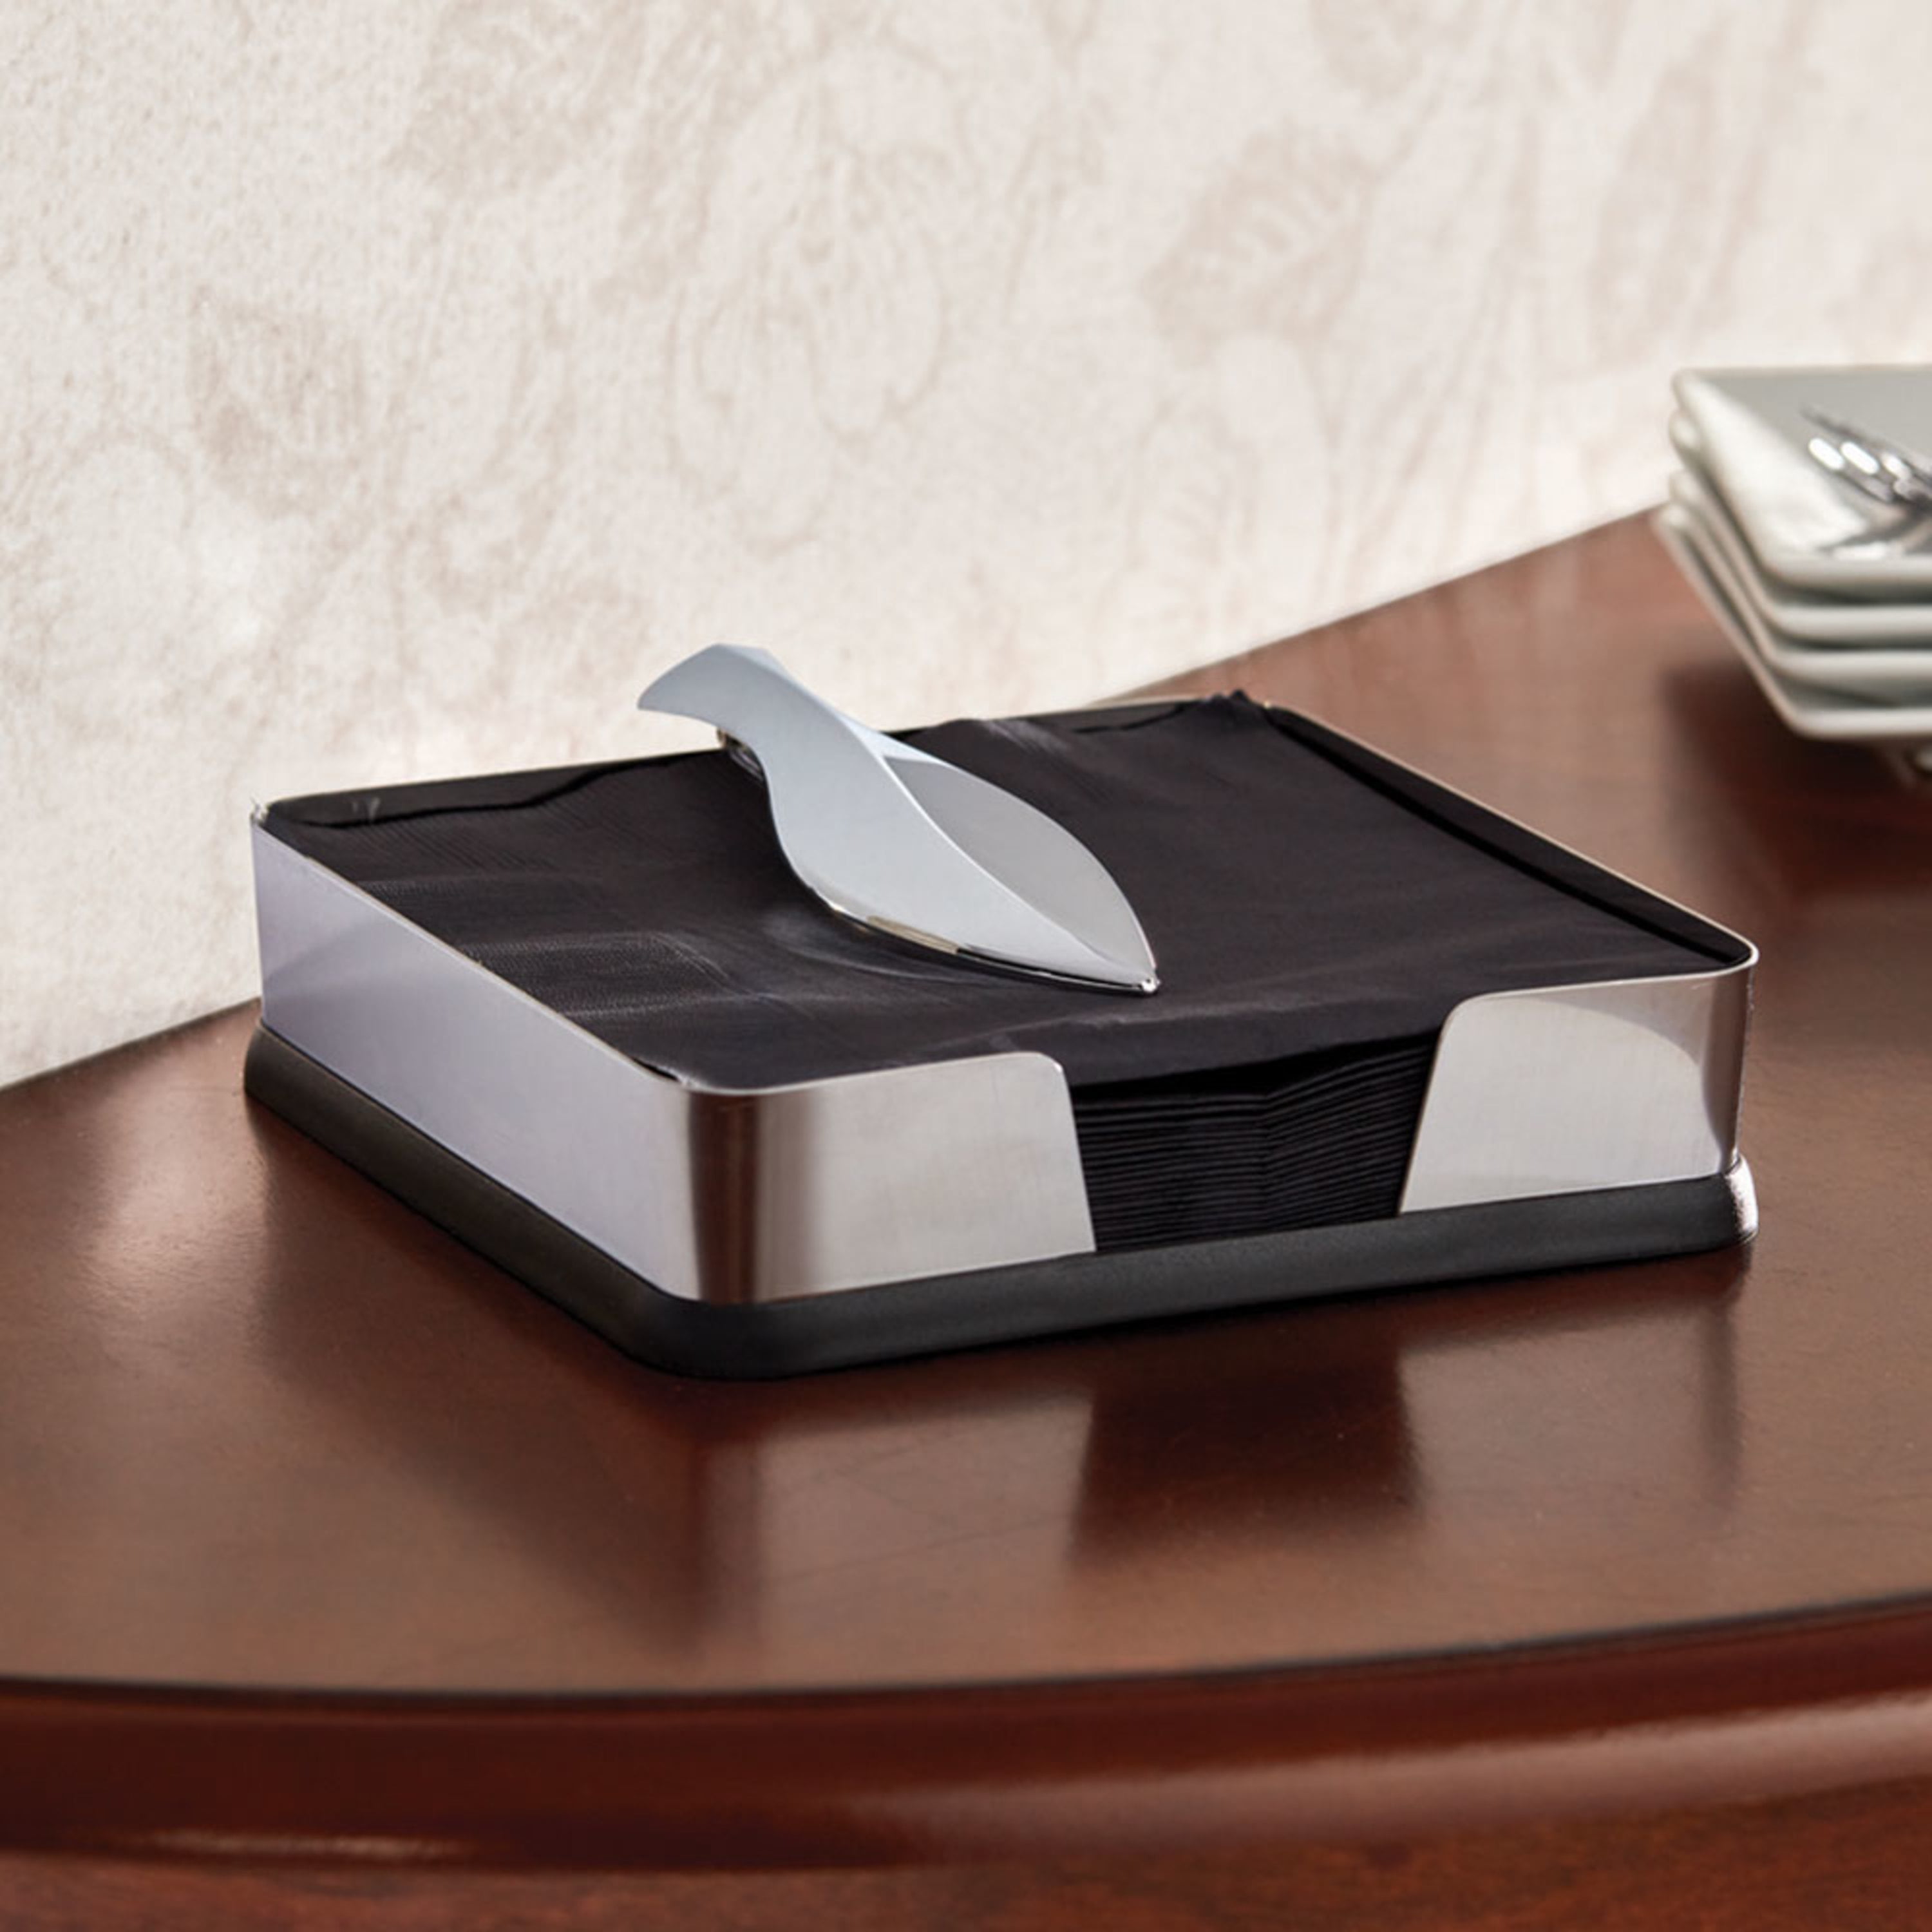 Ceramic Tissue Box Cover Napkin Holder for Countertop Living Room Household  Black 